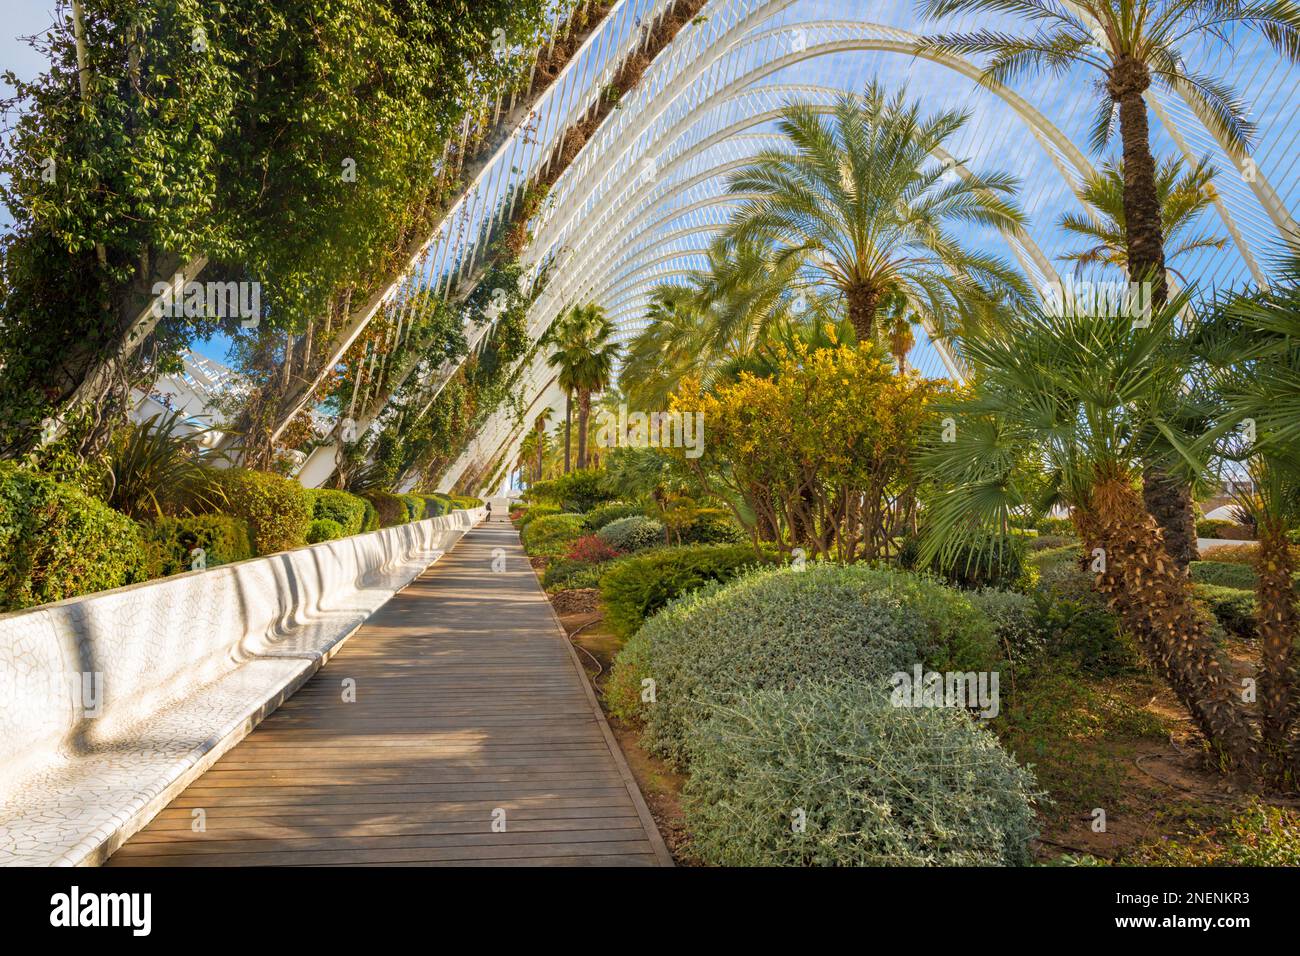 VALENCIA, SPAGNA - 15 FEBBRAIO 2022: Il giardino di scultura l'Umbracle come parte della Città delle Arti progettato da Santiago Calatrava. Foto Stock